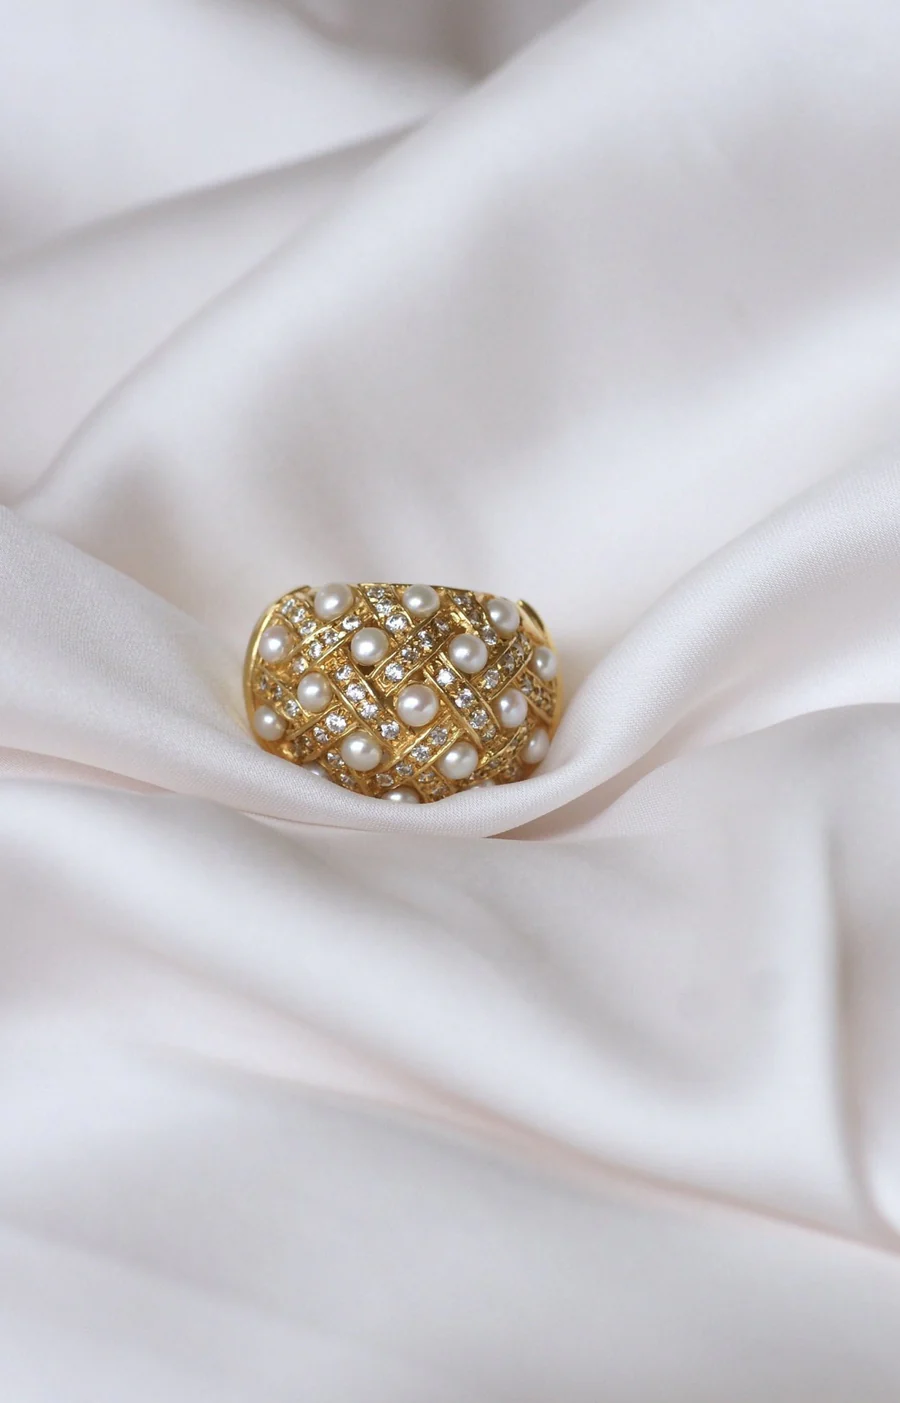 Diamond and pearl ring - Galerie Pénélope